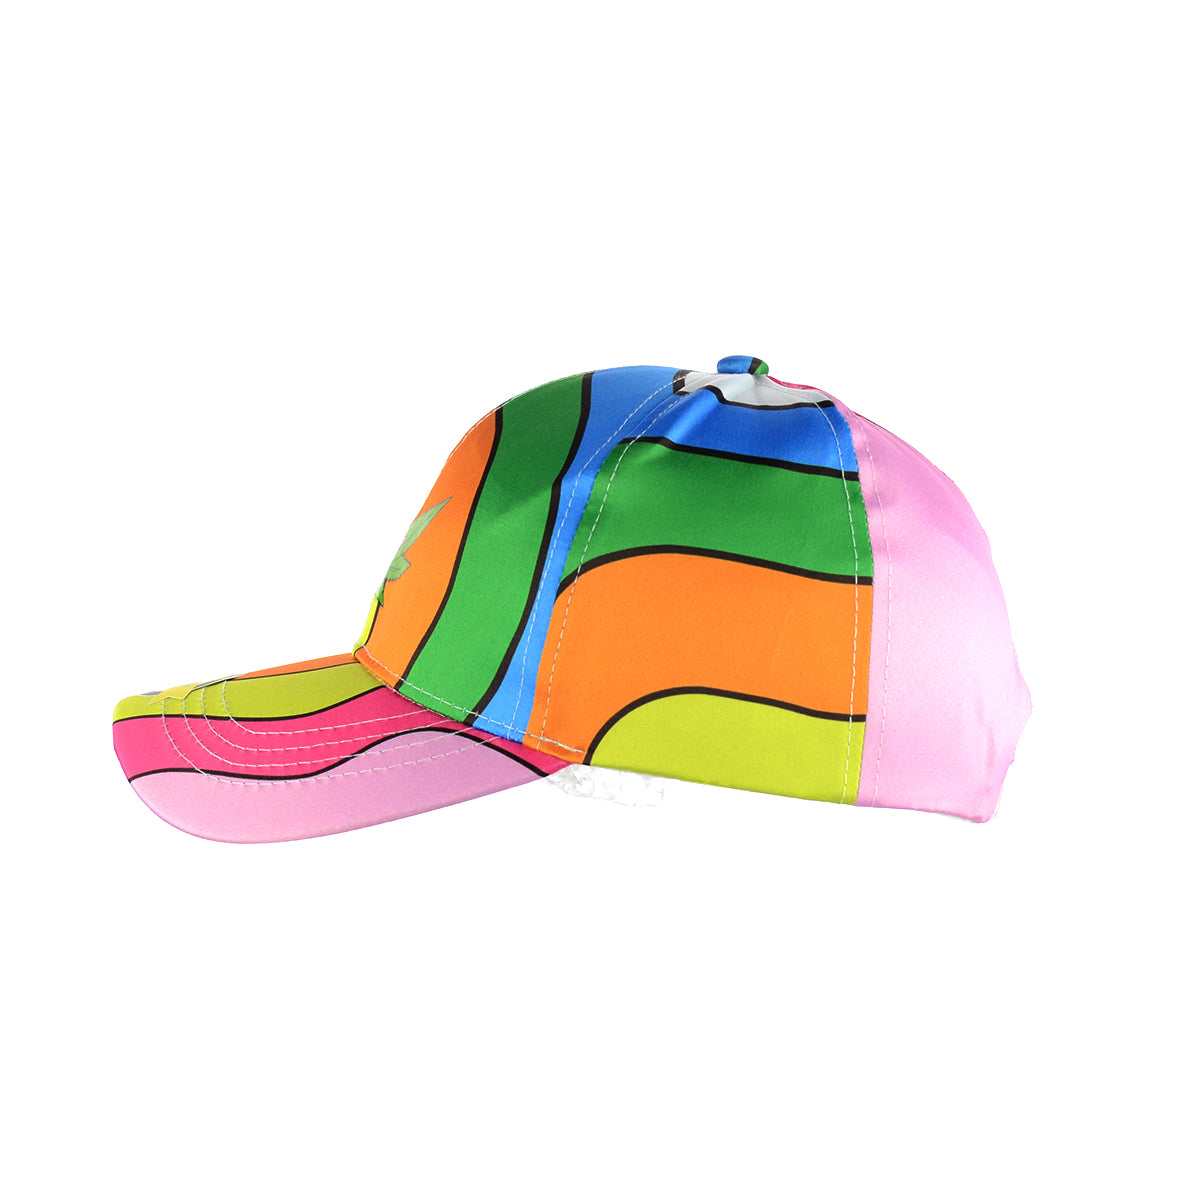 Weed Leaf Rainbow Color Baseball Snapback Hat